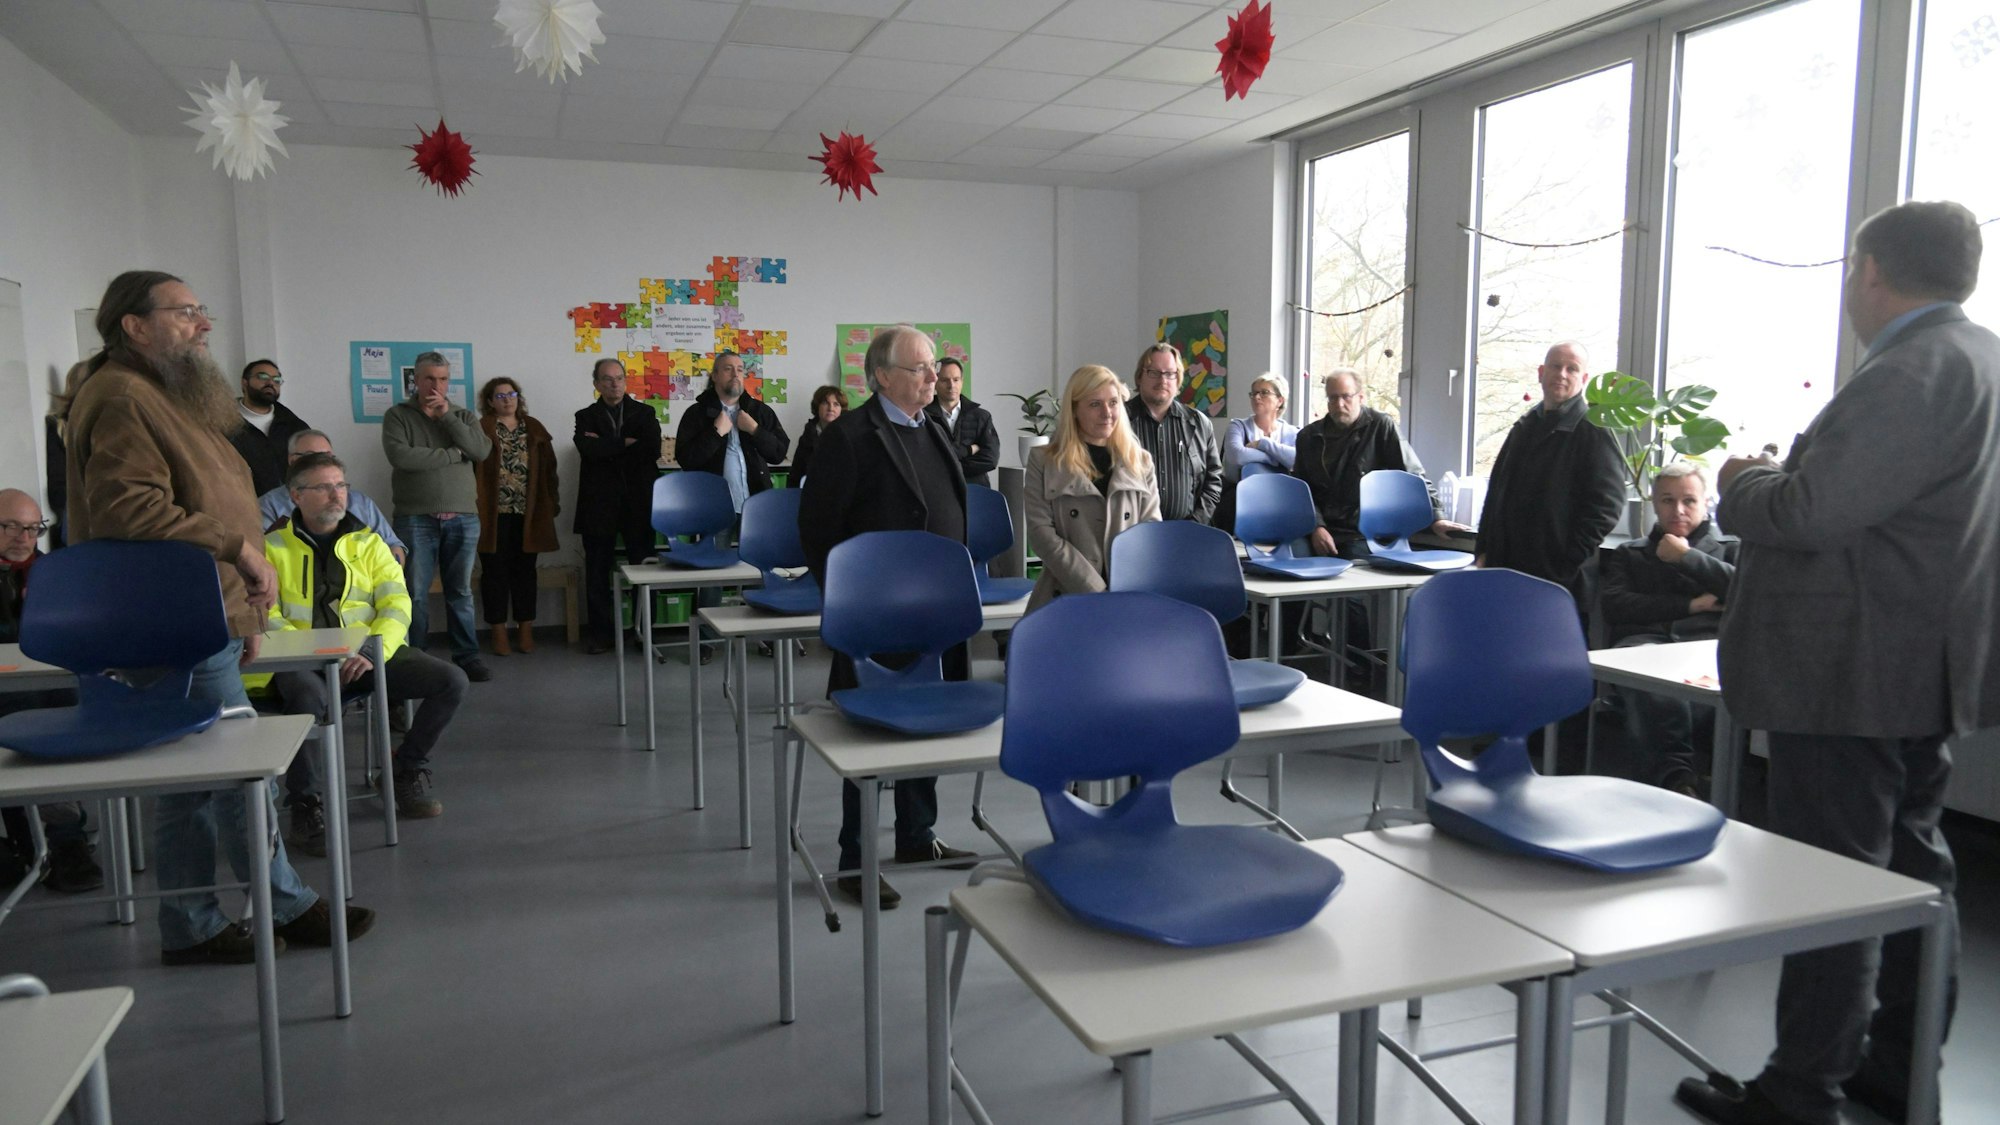 In einem Klassenraum stehen die Gäste der Führung durch das Rösrather Schulzentrum und hören einem Referenten zu.